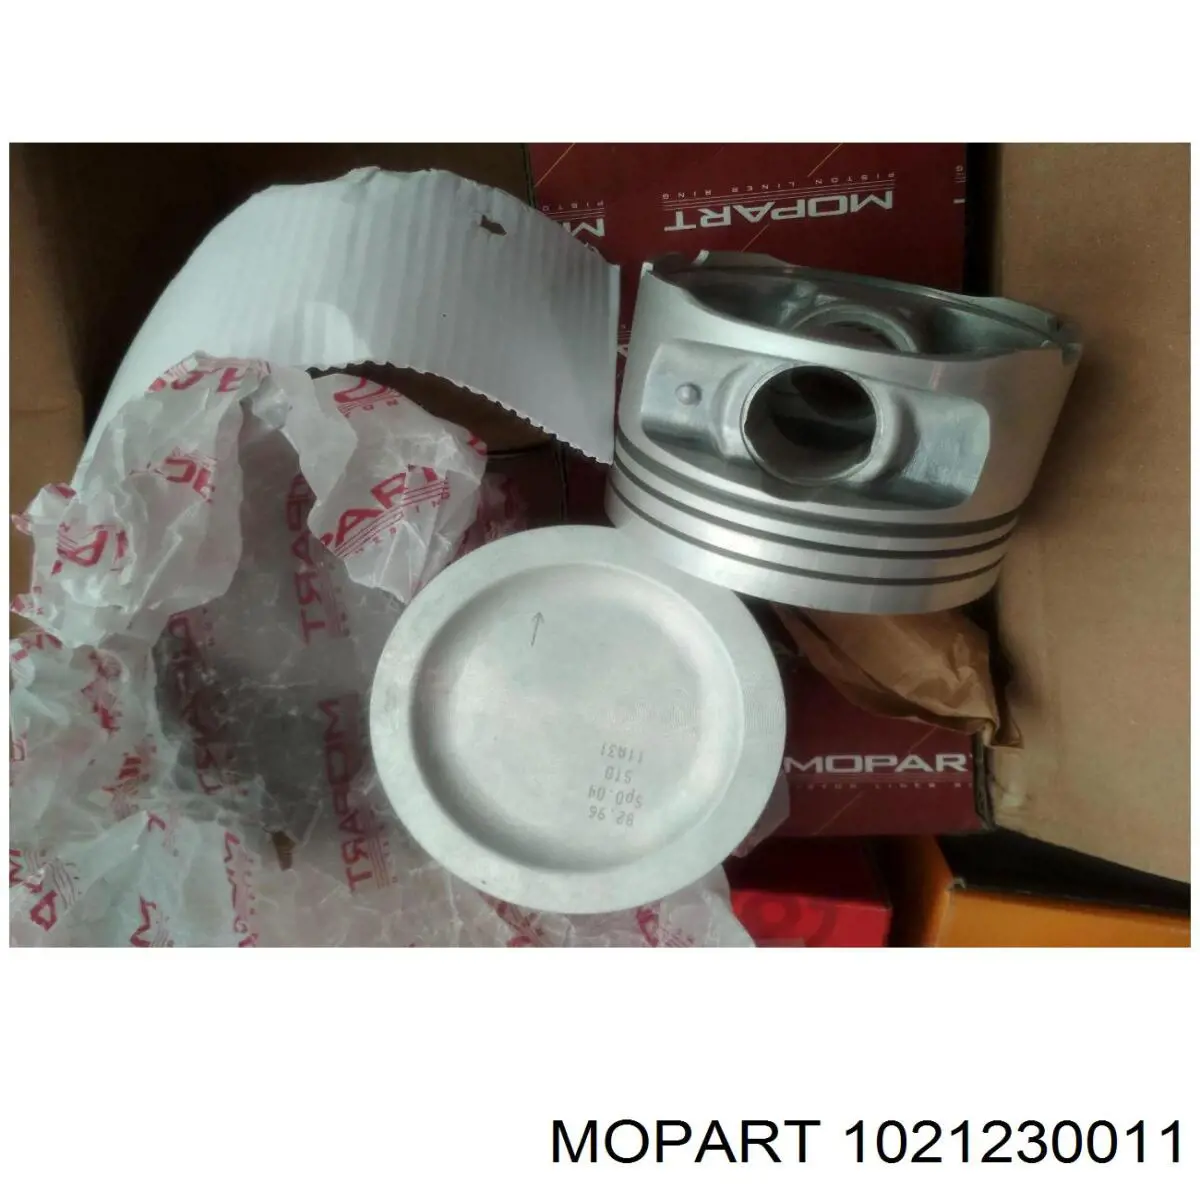 1021230011 Mopart поршень в комплекте на 1 цилиндр, 2-й ремонт (+0,50)